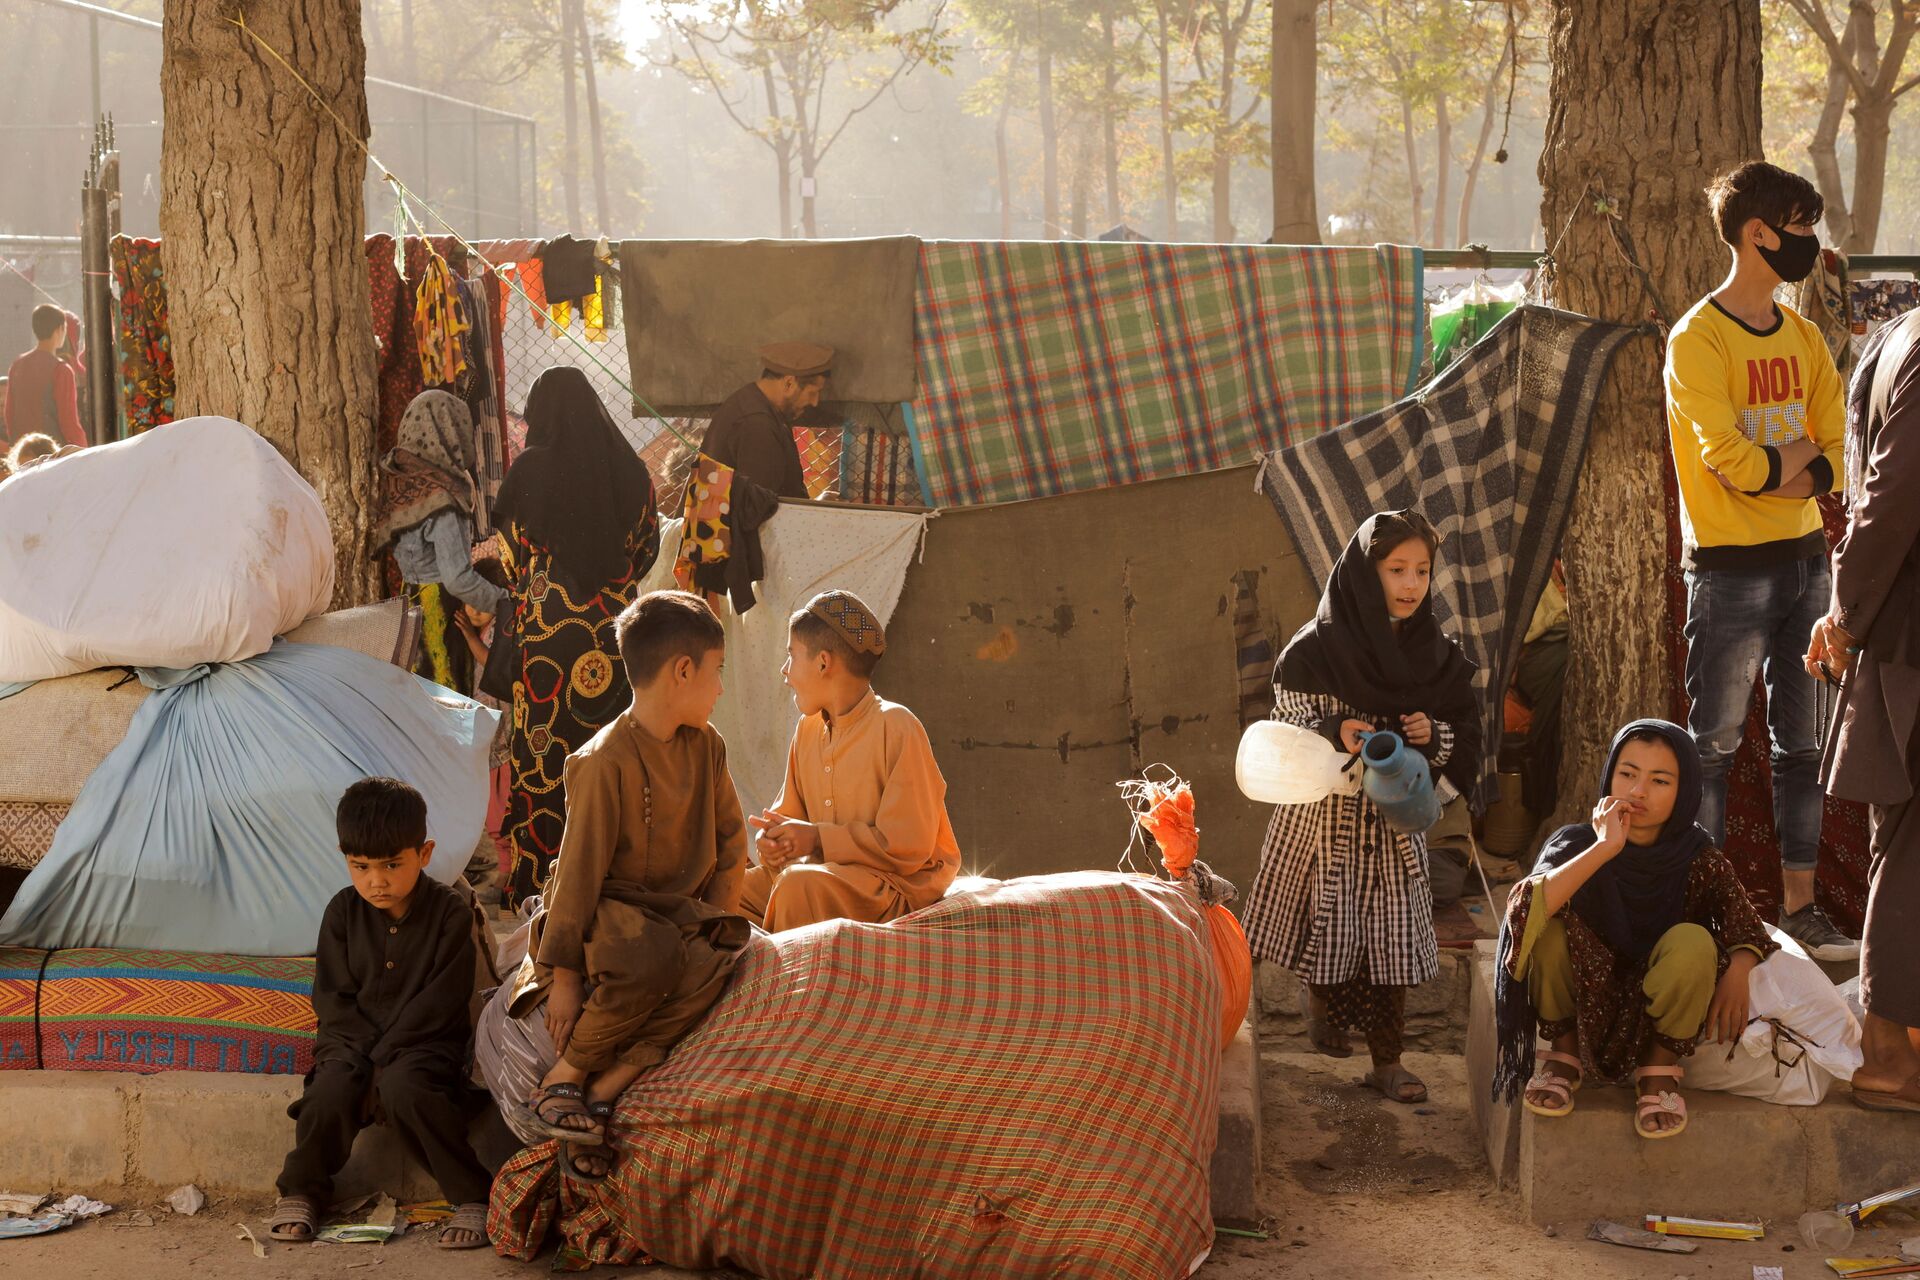 Famílias afegãs, em fuga da violência, sentam-se com seus pertences enquanto se preparam para retornar a suas províncias, em um abrigo improvisado no parque Shahr-e Naw em Cabul, Afeganistão, 4 de outubro de 2021 - Sputnik Brasil, 1920, 09.11.2021